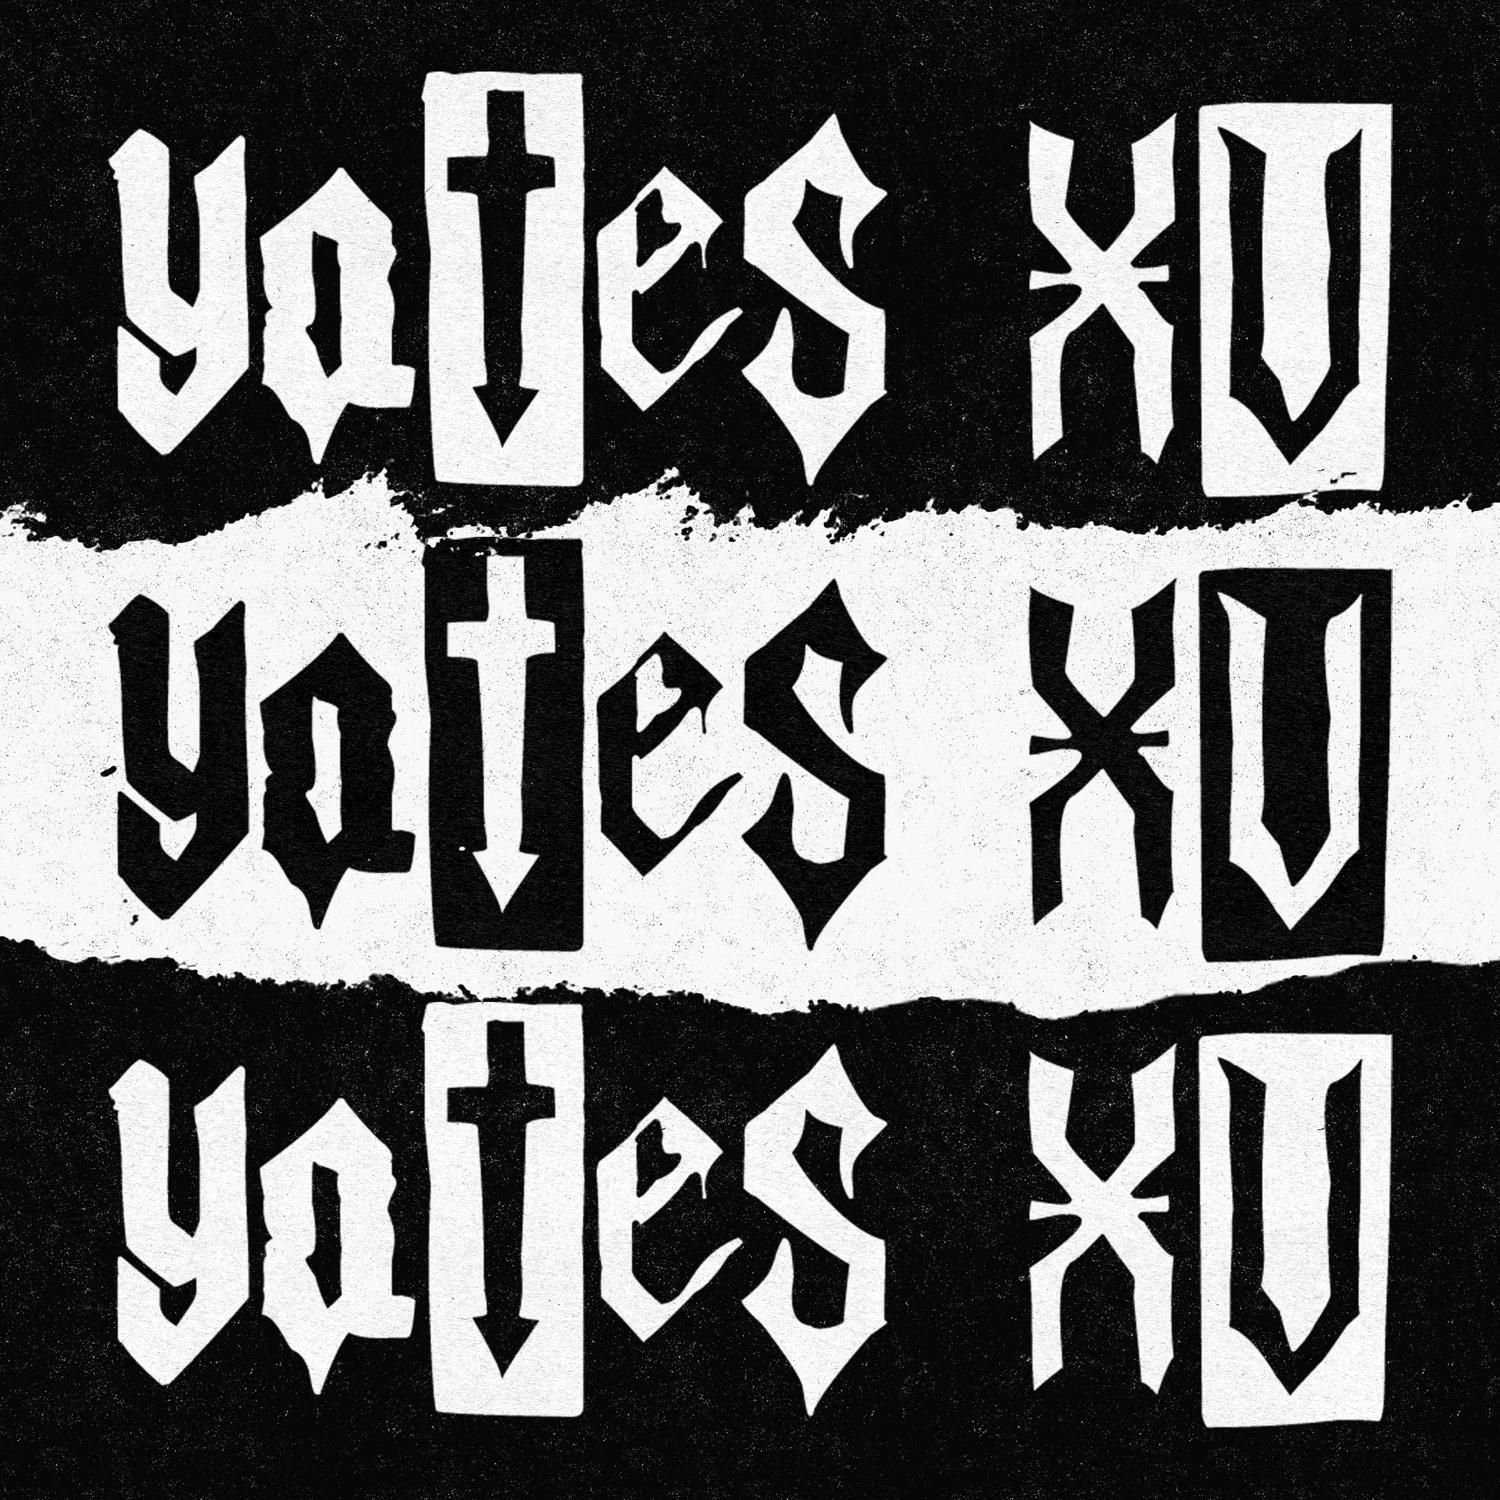 Yates XV